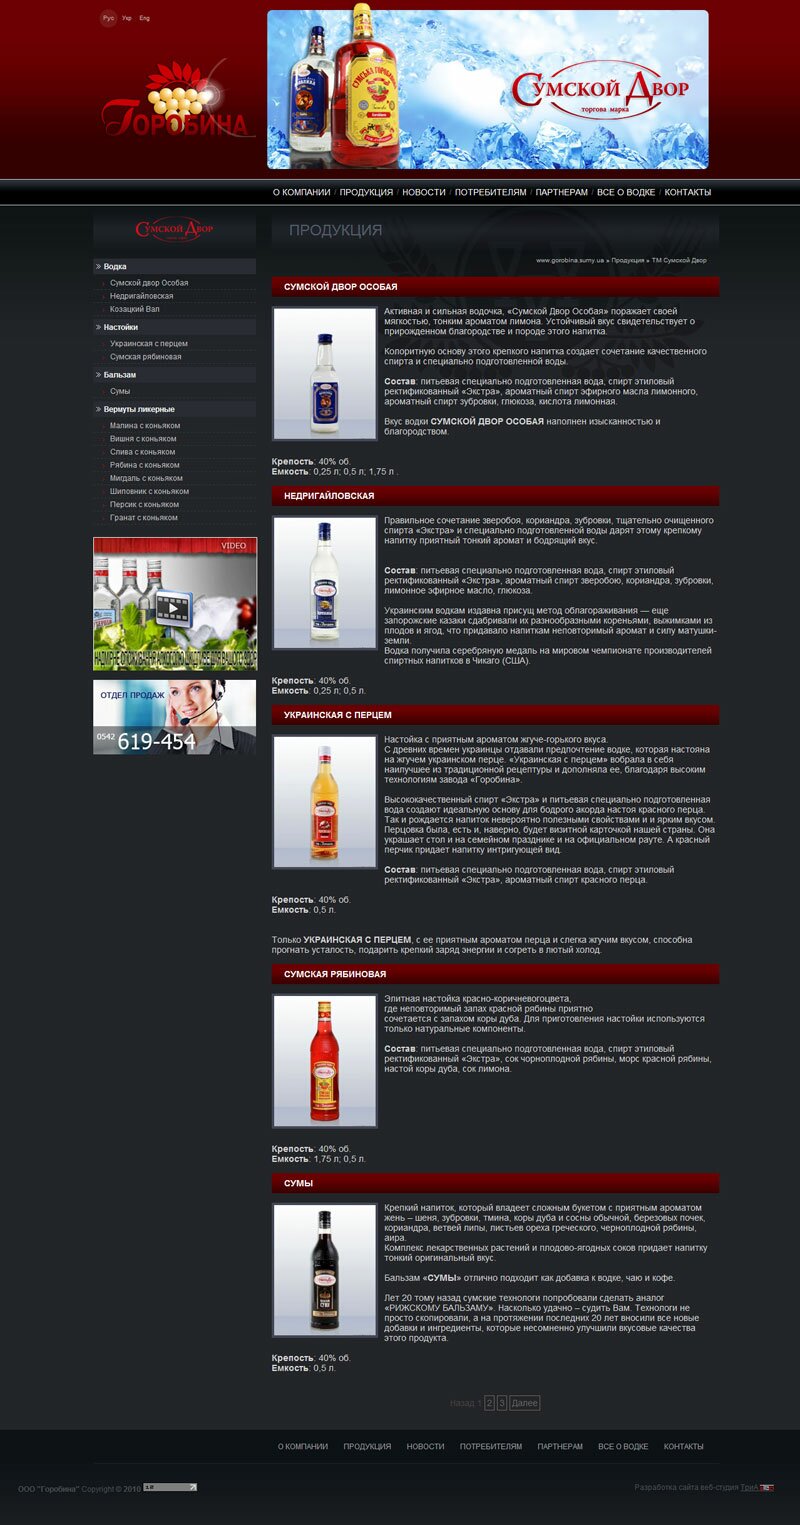 Компания «Горобина» - производитель ликеро-водочной и безалкогольной продукции